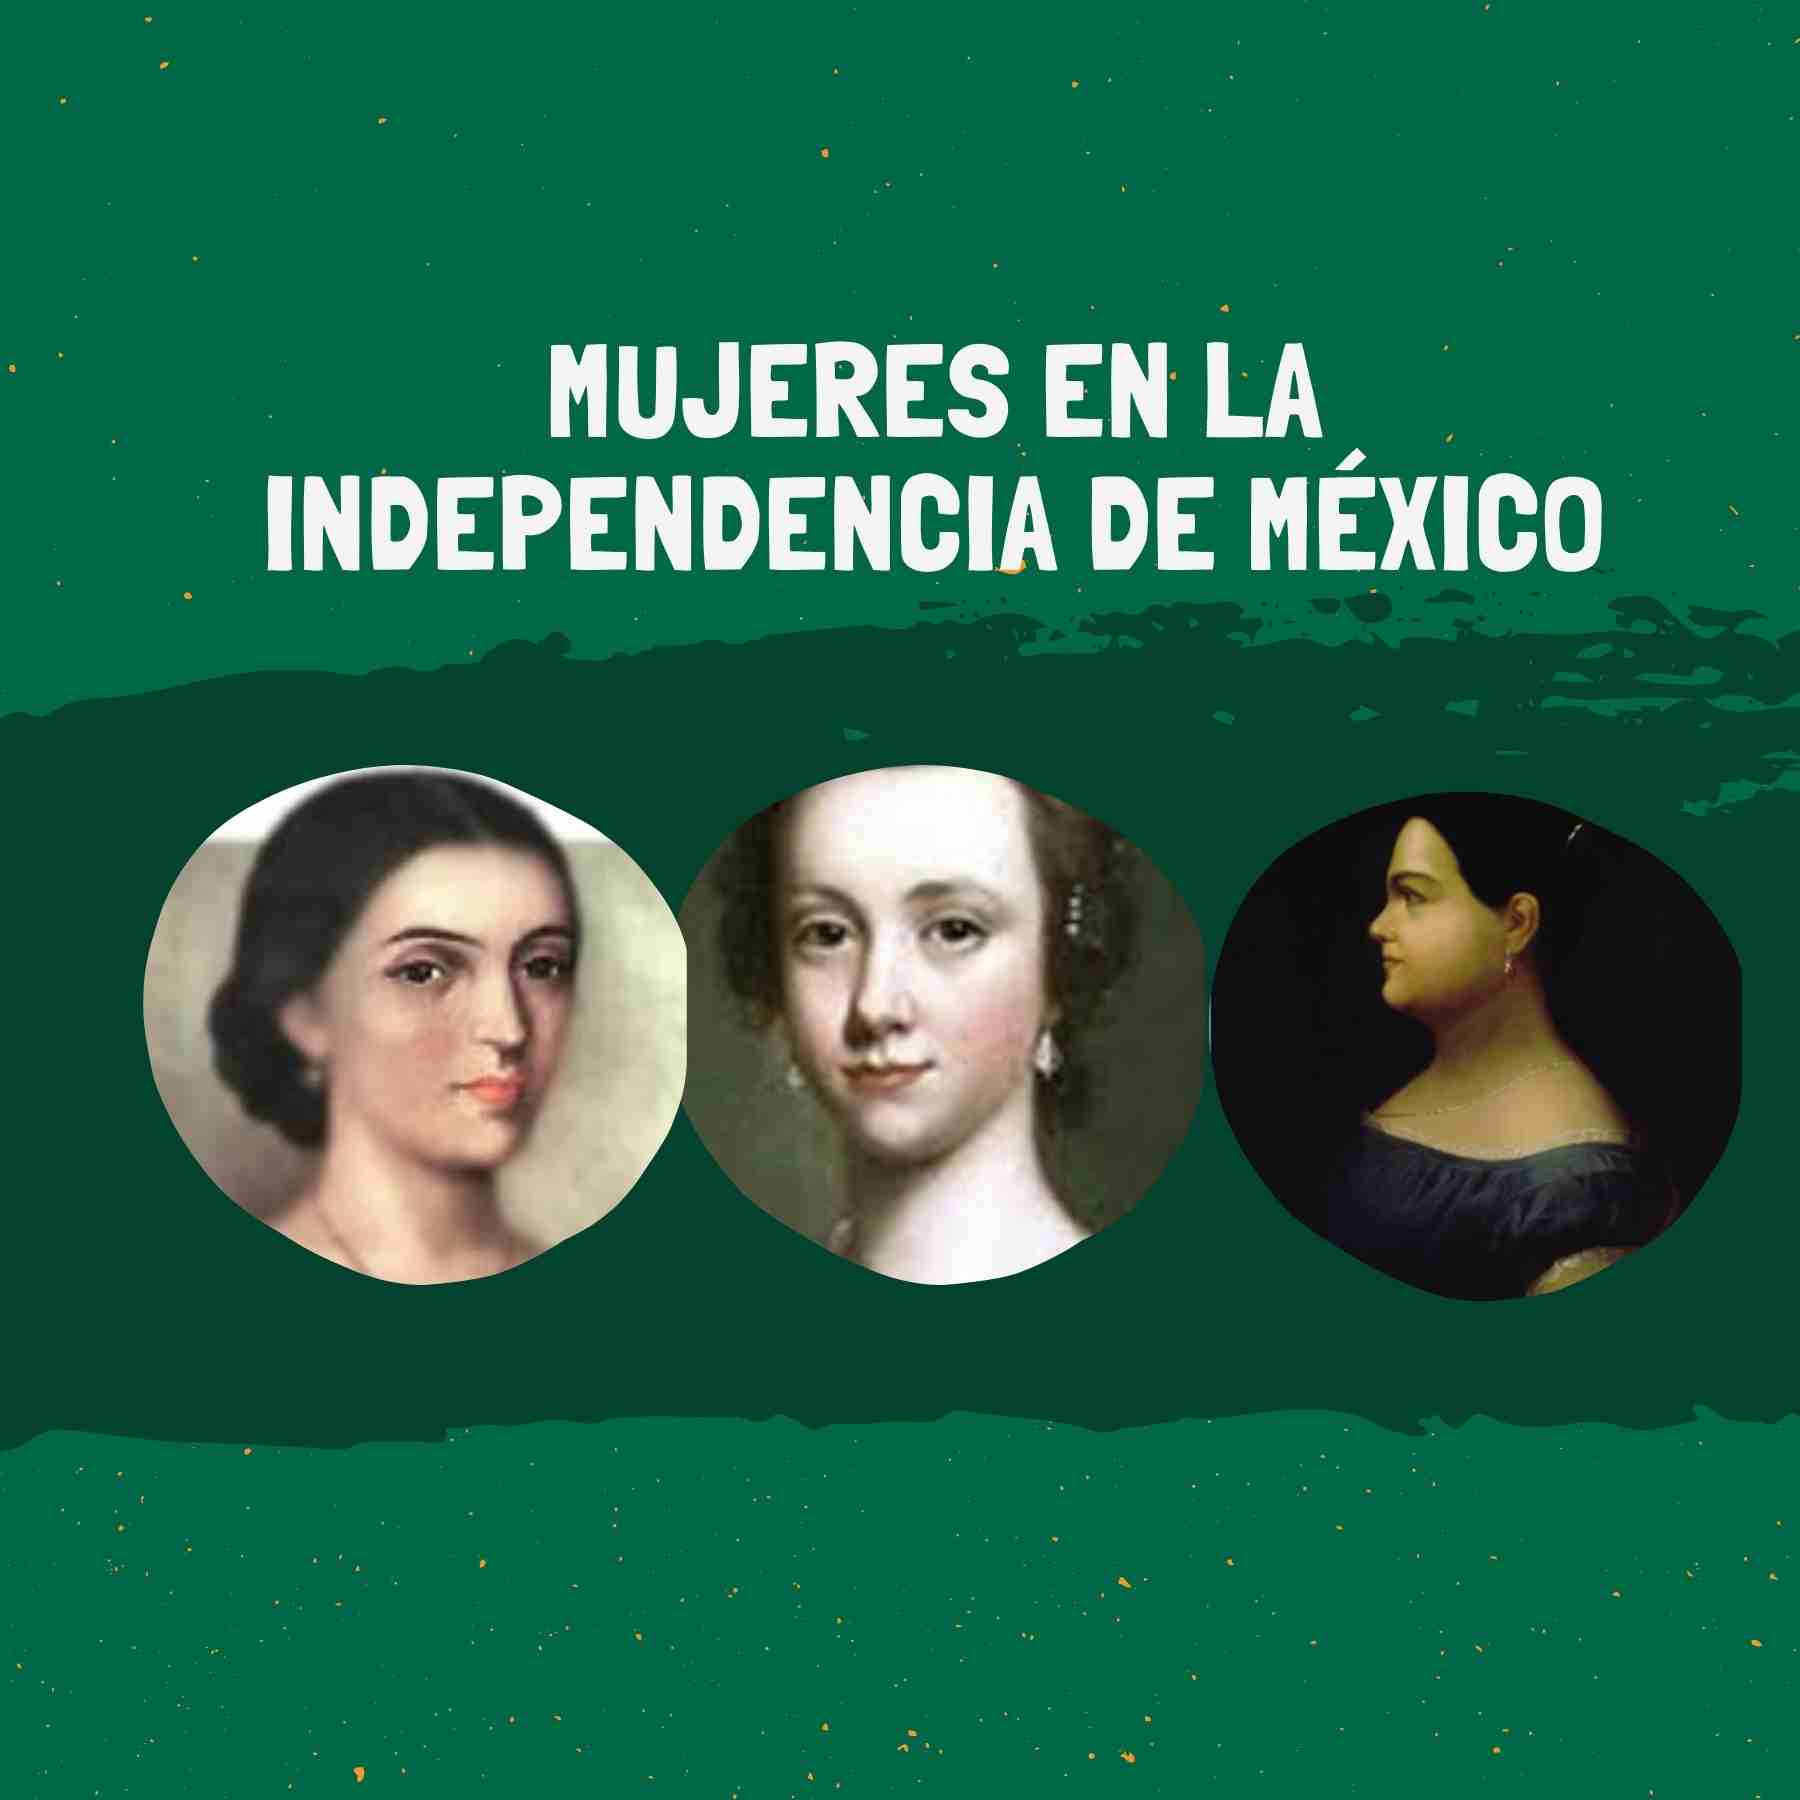 fotografía ilustrativa sobre mujeres en la independencia de México.